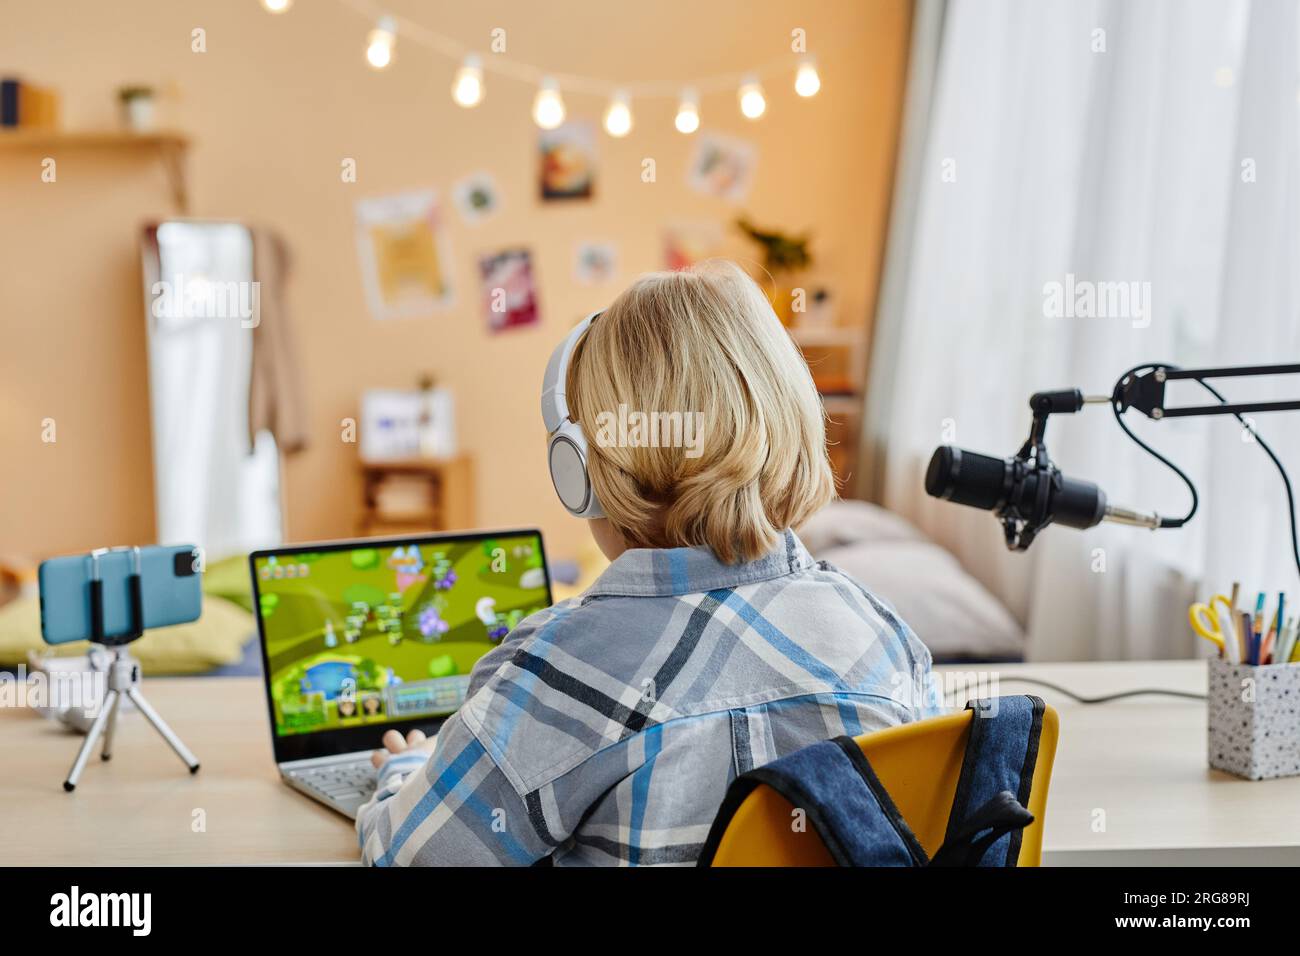 Rückansicht eines blonden Schuljungen, der auf einer Laptop-Tastatur tippt, während er in seiner häuslichen Umgebung vor der Kamera am Schreibtisch sitzt und Videospiele spielt Stockfoto